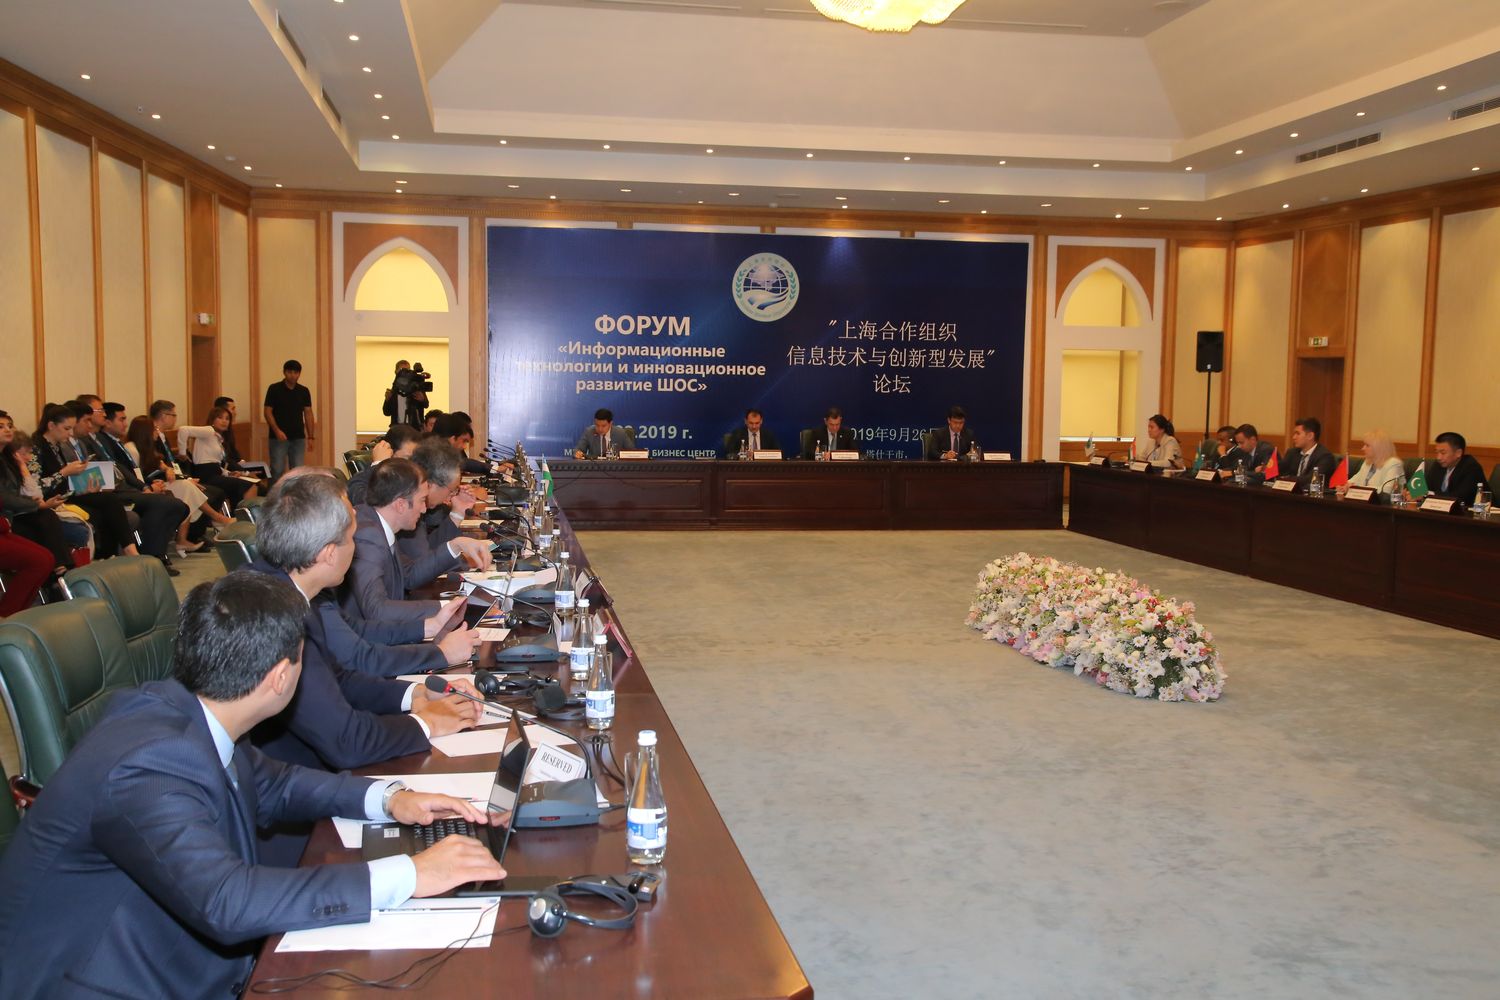 В Узбекистане состоялся Форум информационных технологий и инновационного развития ШОС